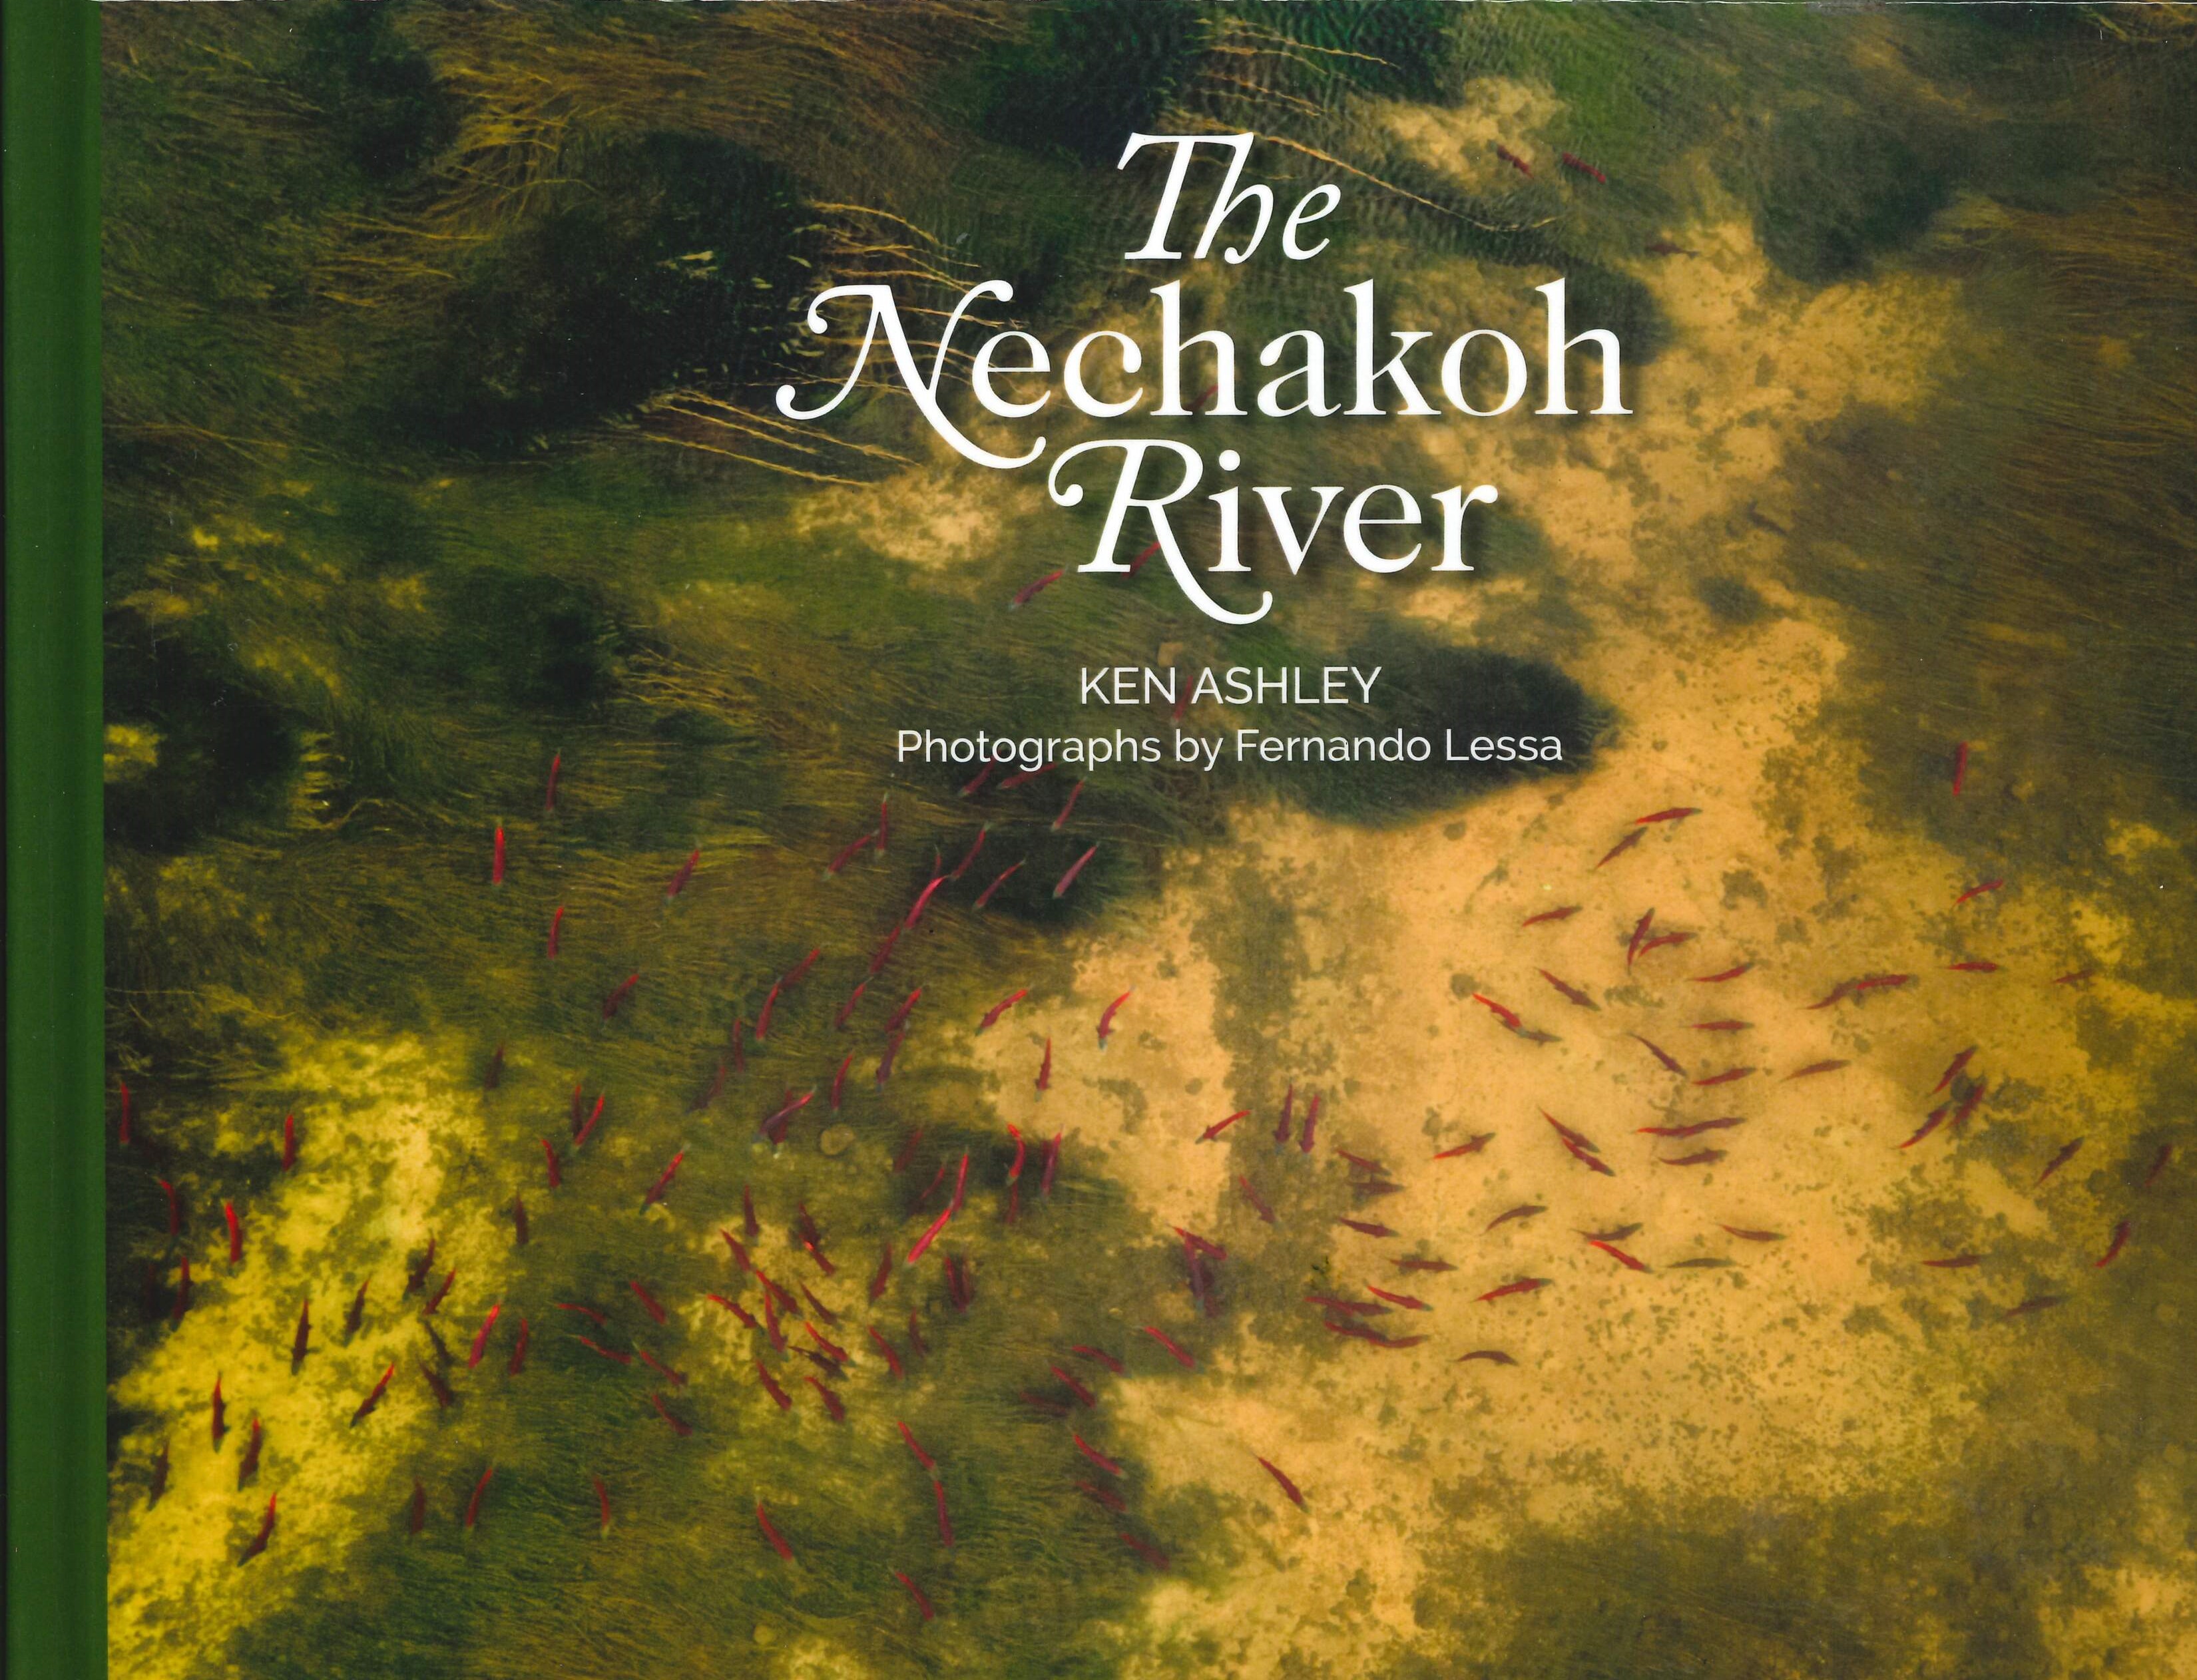 The Nechakoh River